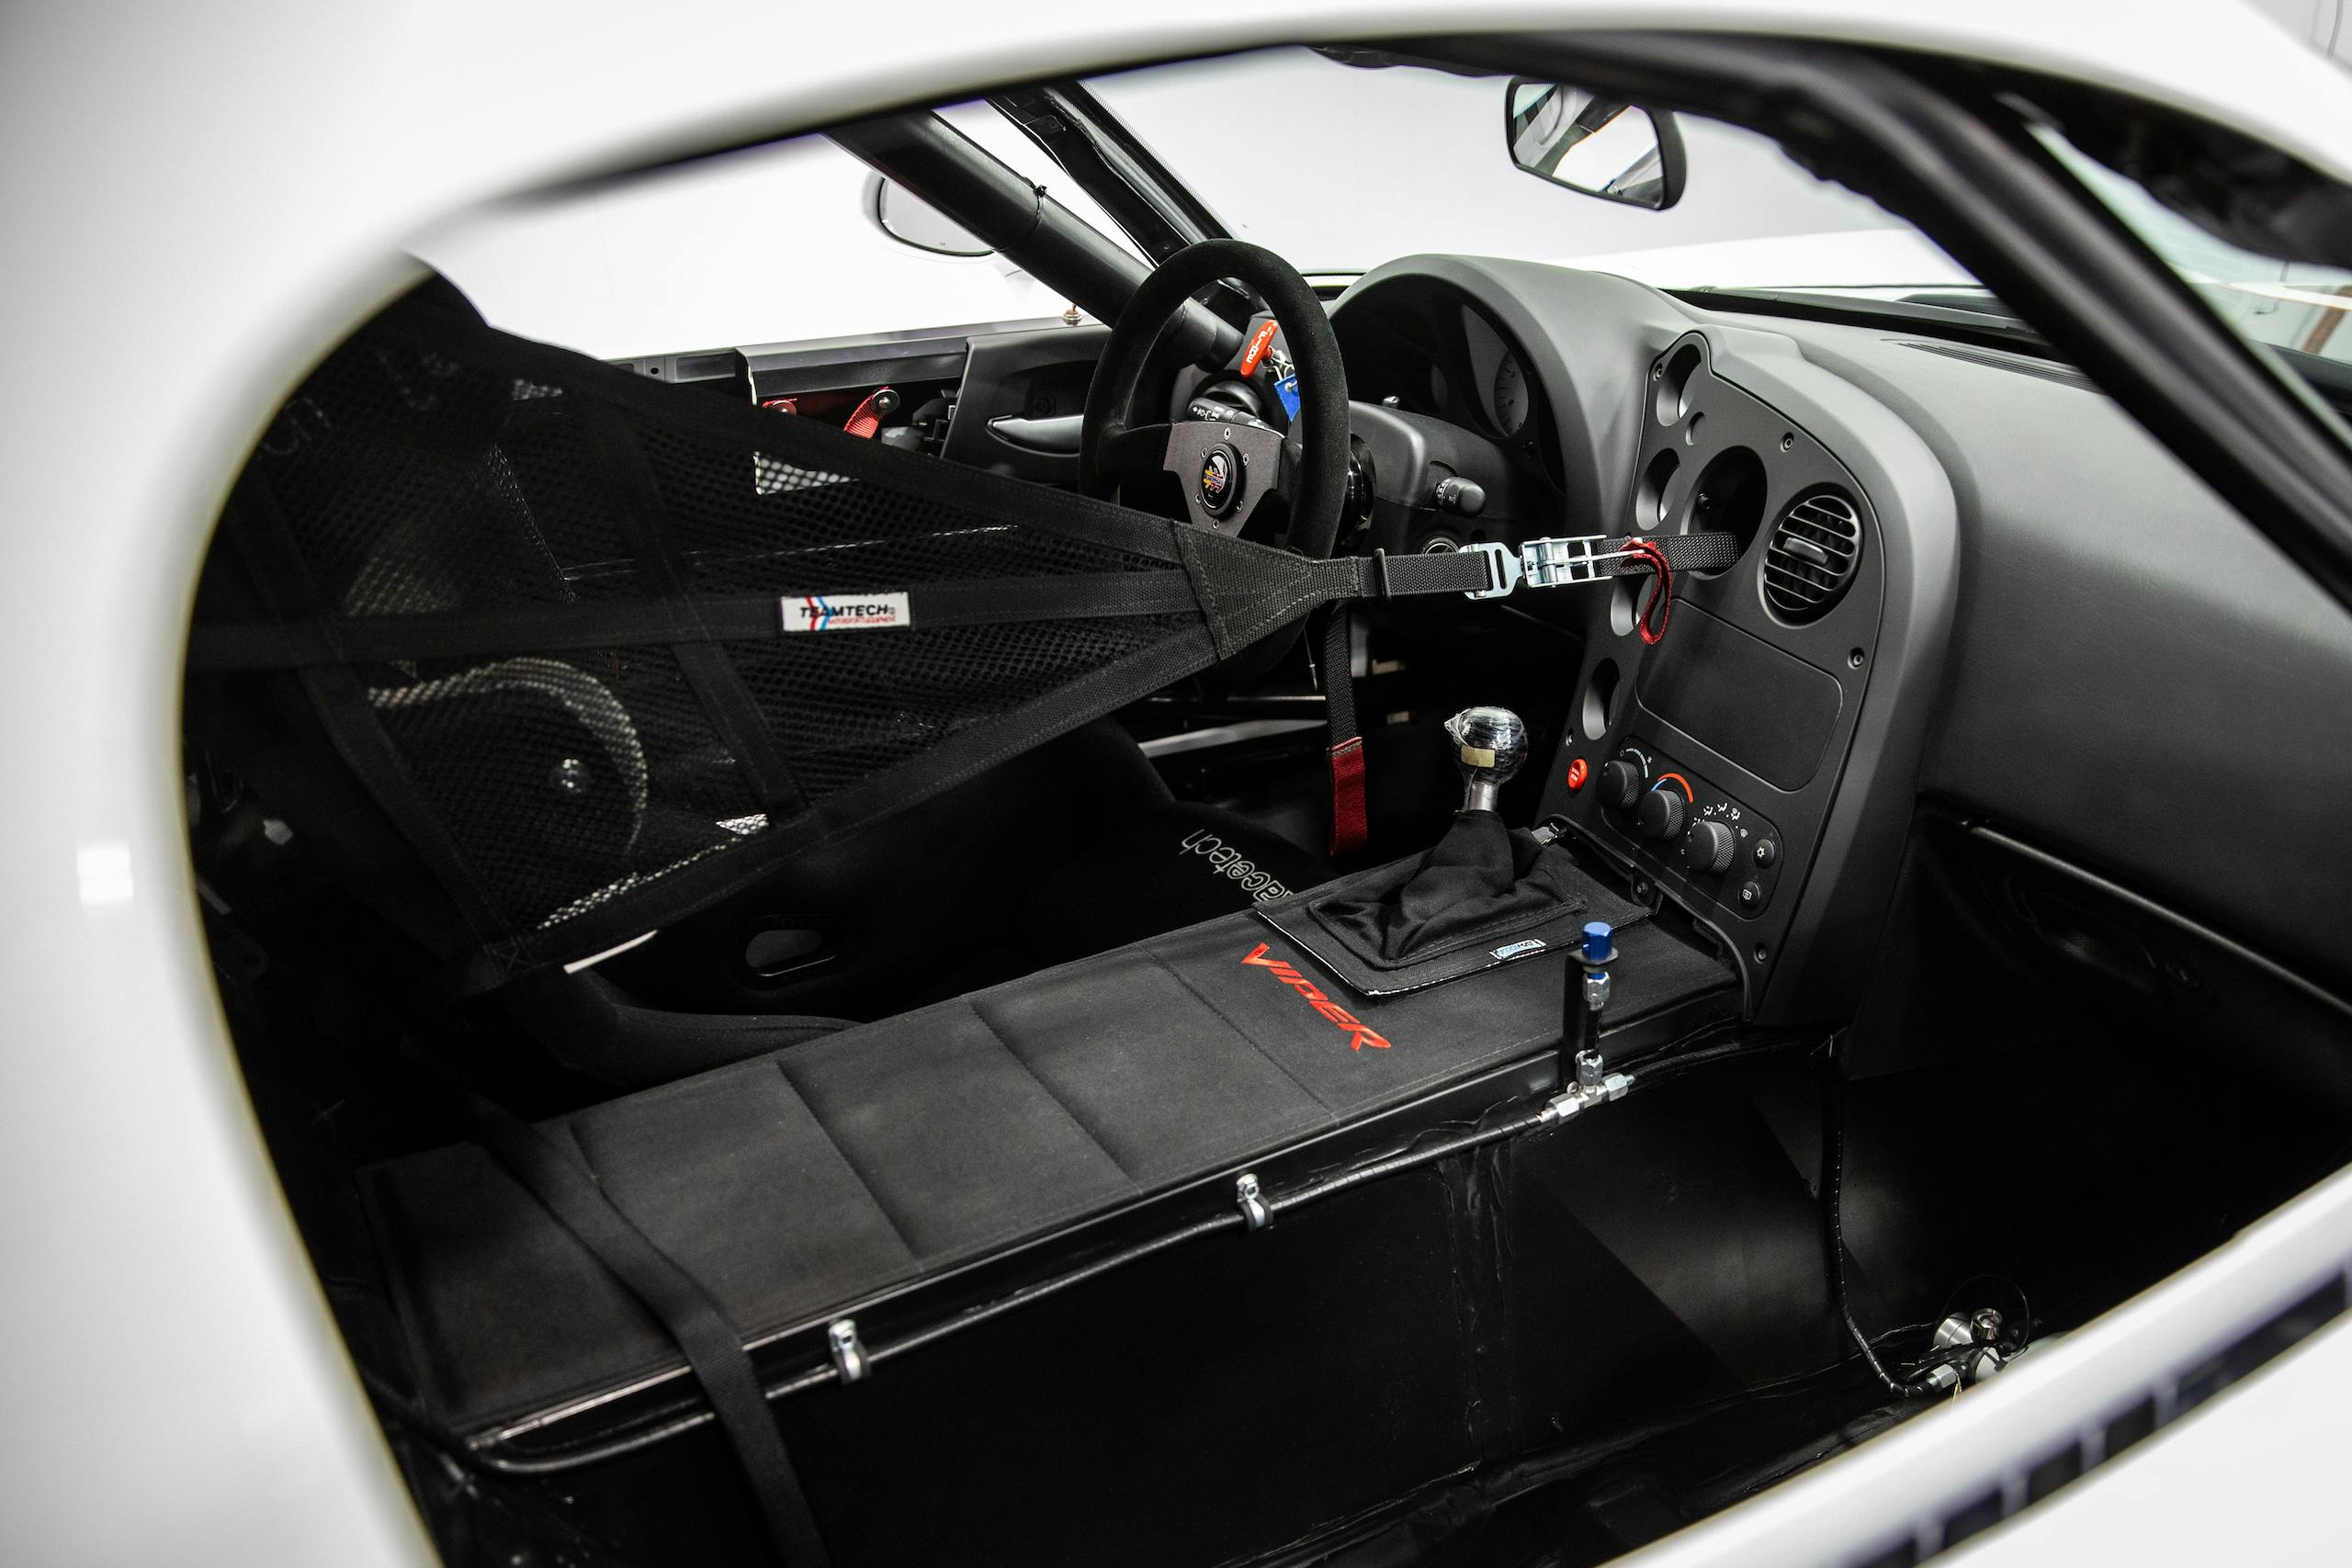 Viper collection interior cockpit